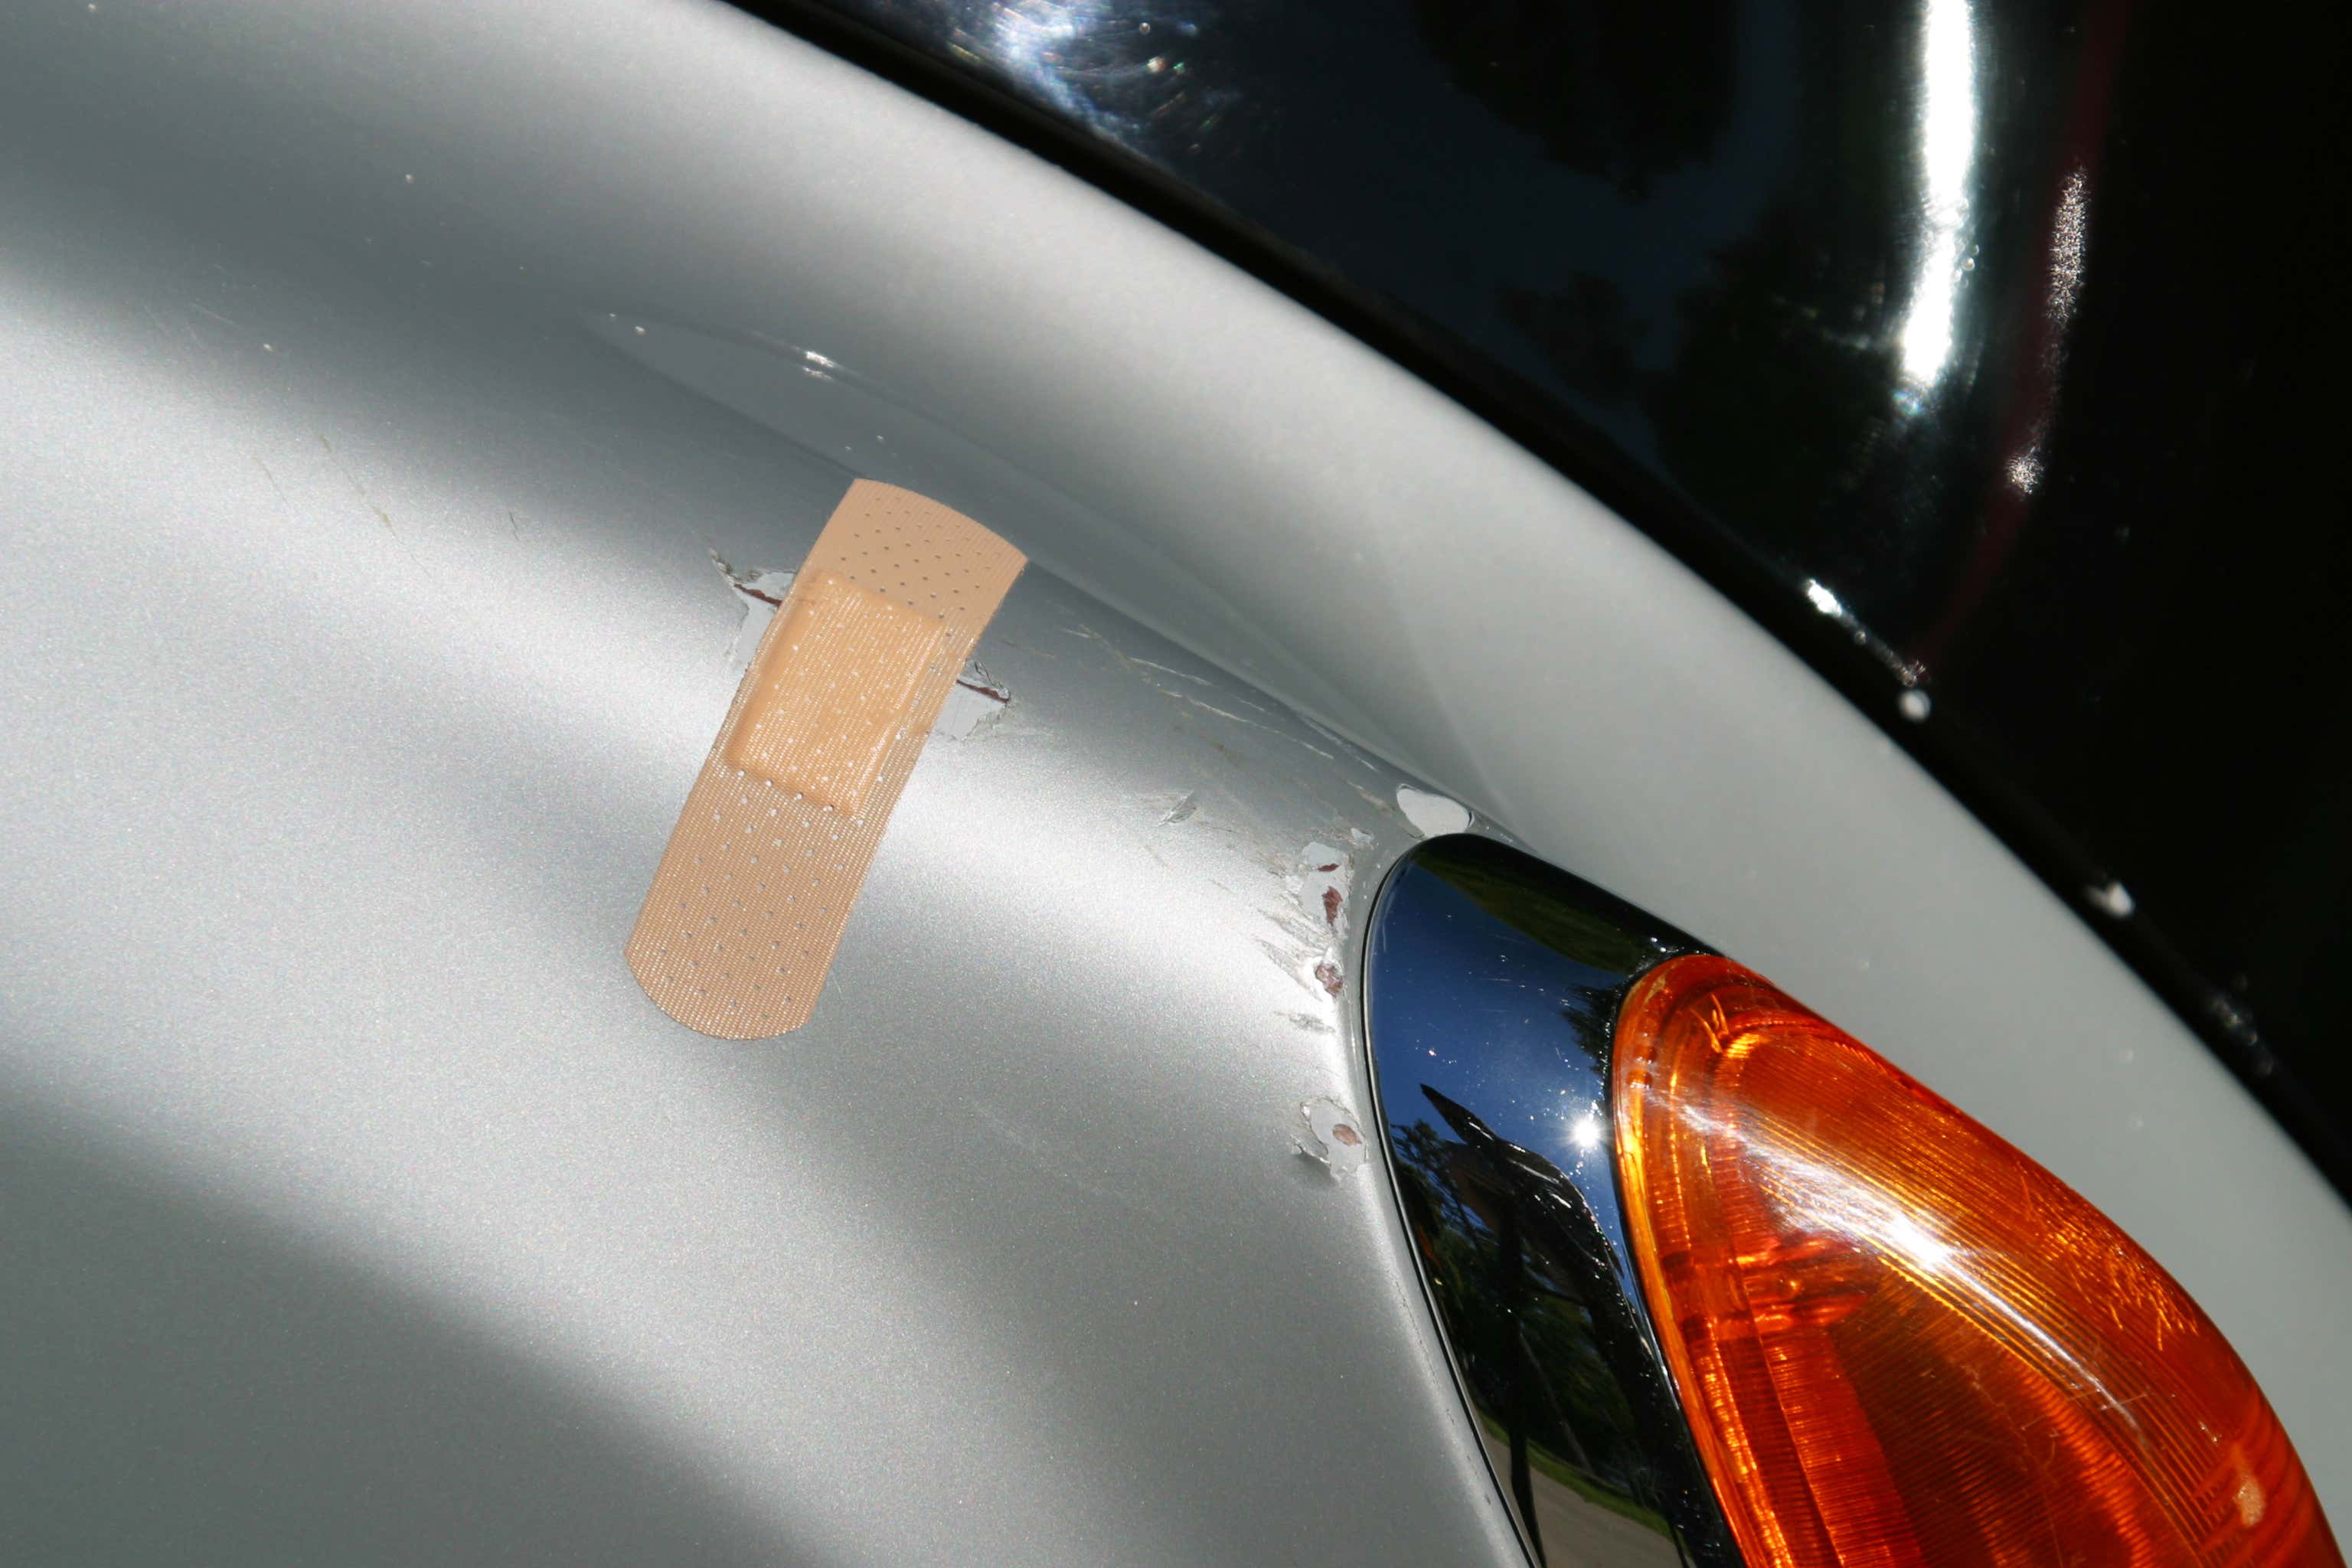 一辆银色汽车边上的划痕被用创可贴覆盖